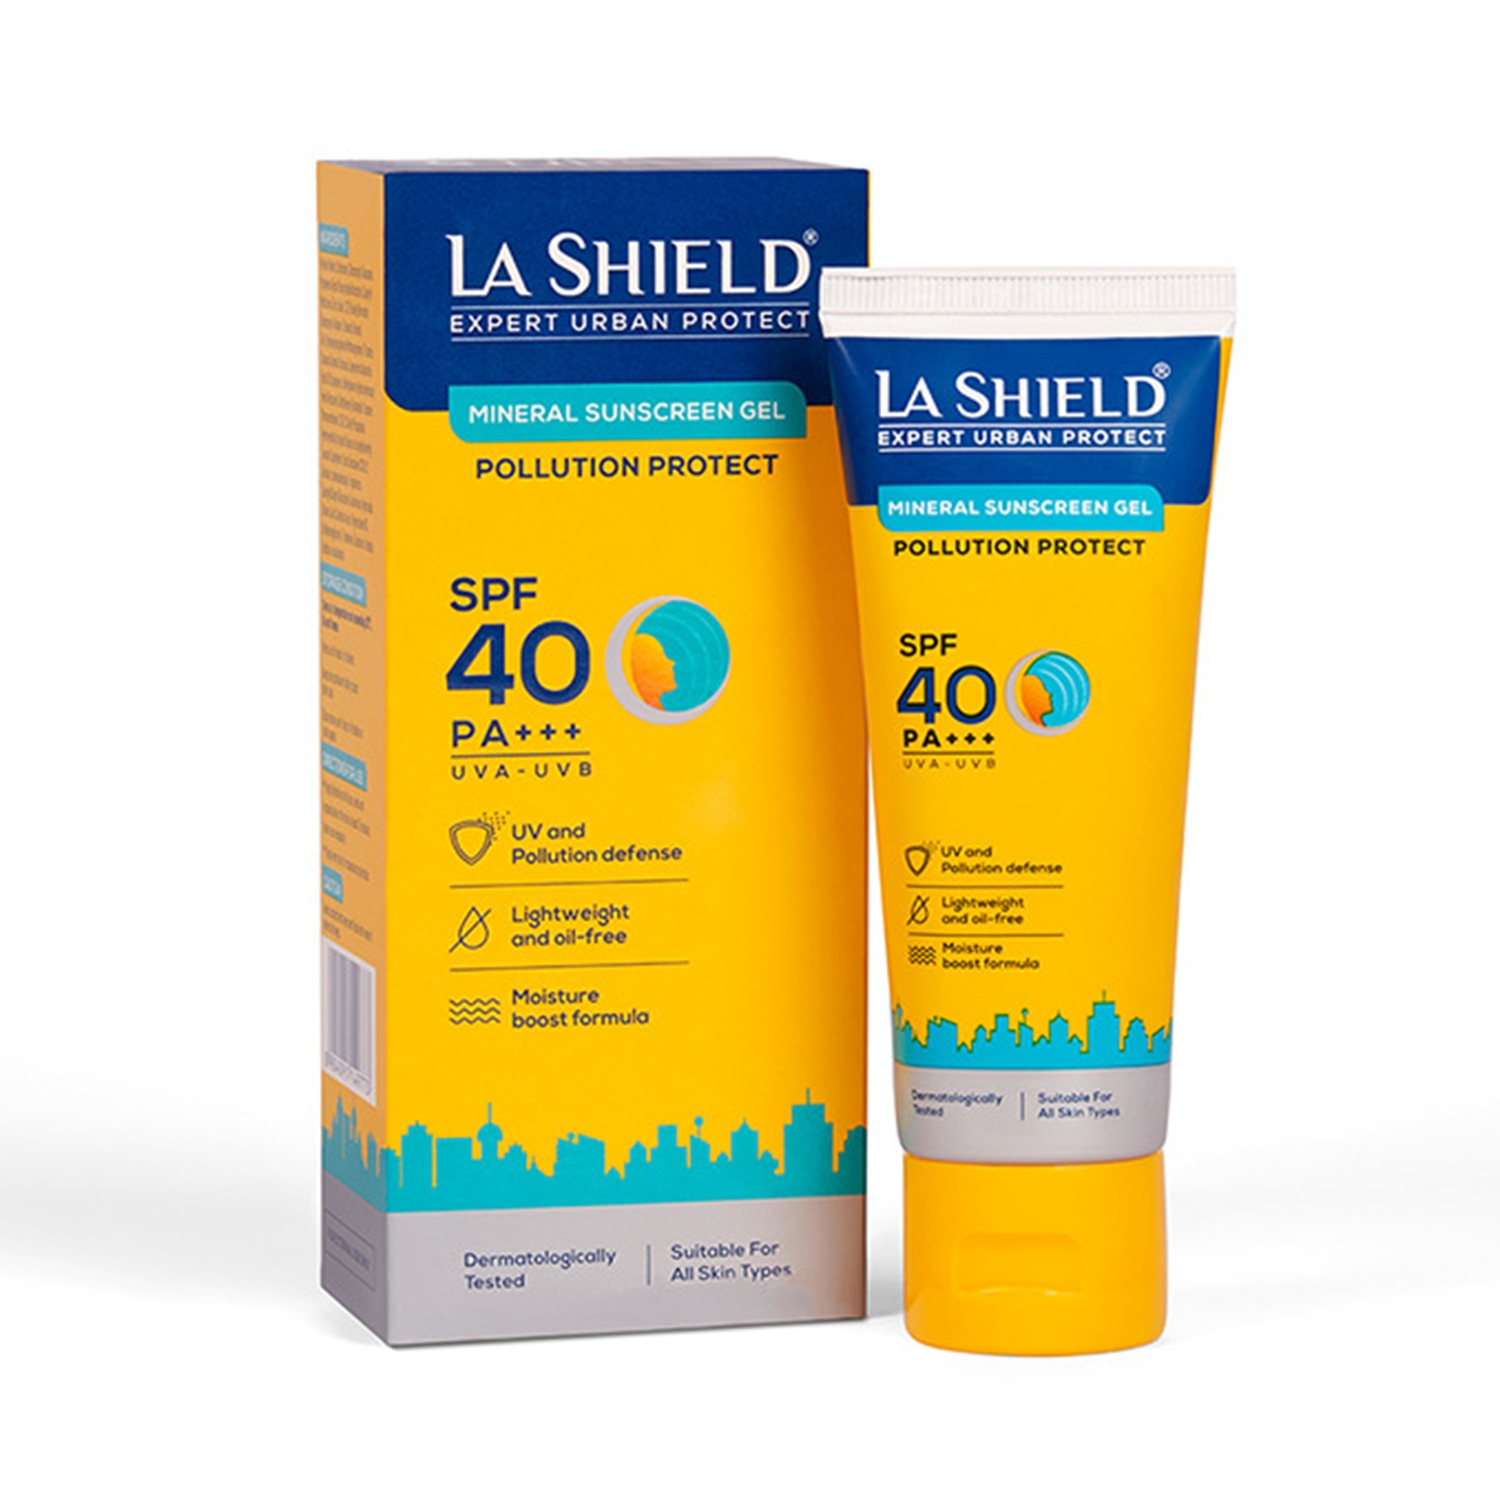 La Shield | La Shield Pollution Protect Mineral Sunscreen Gel SPF 50 (50g)